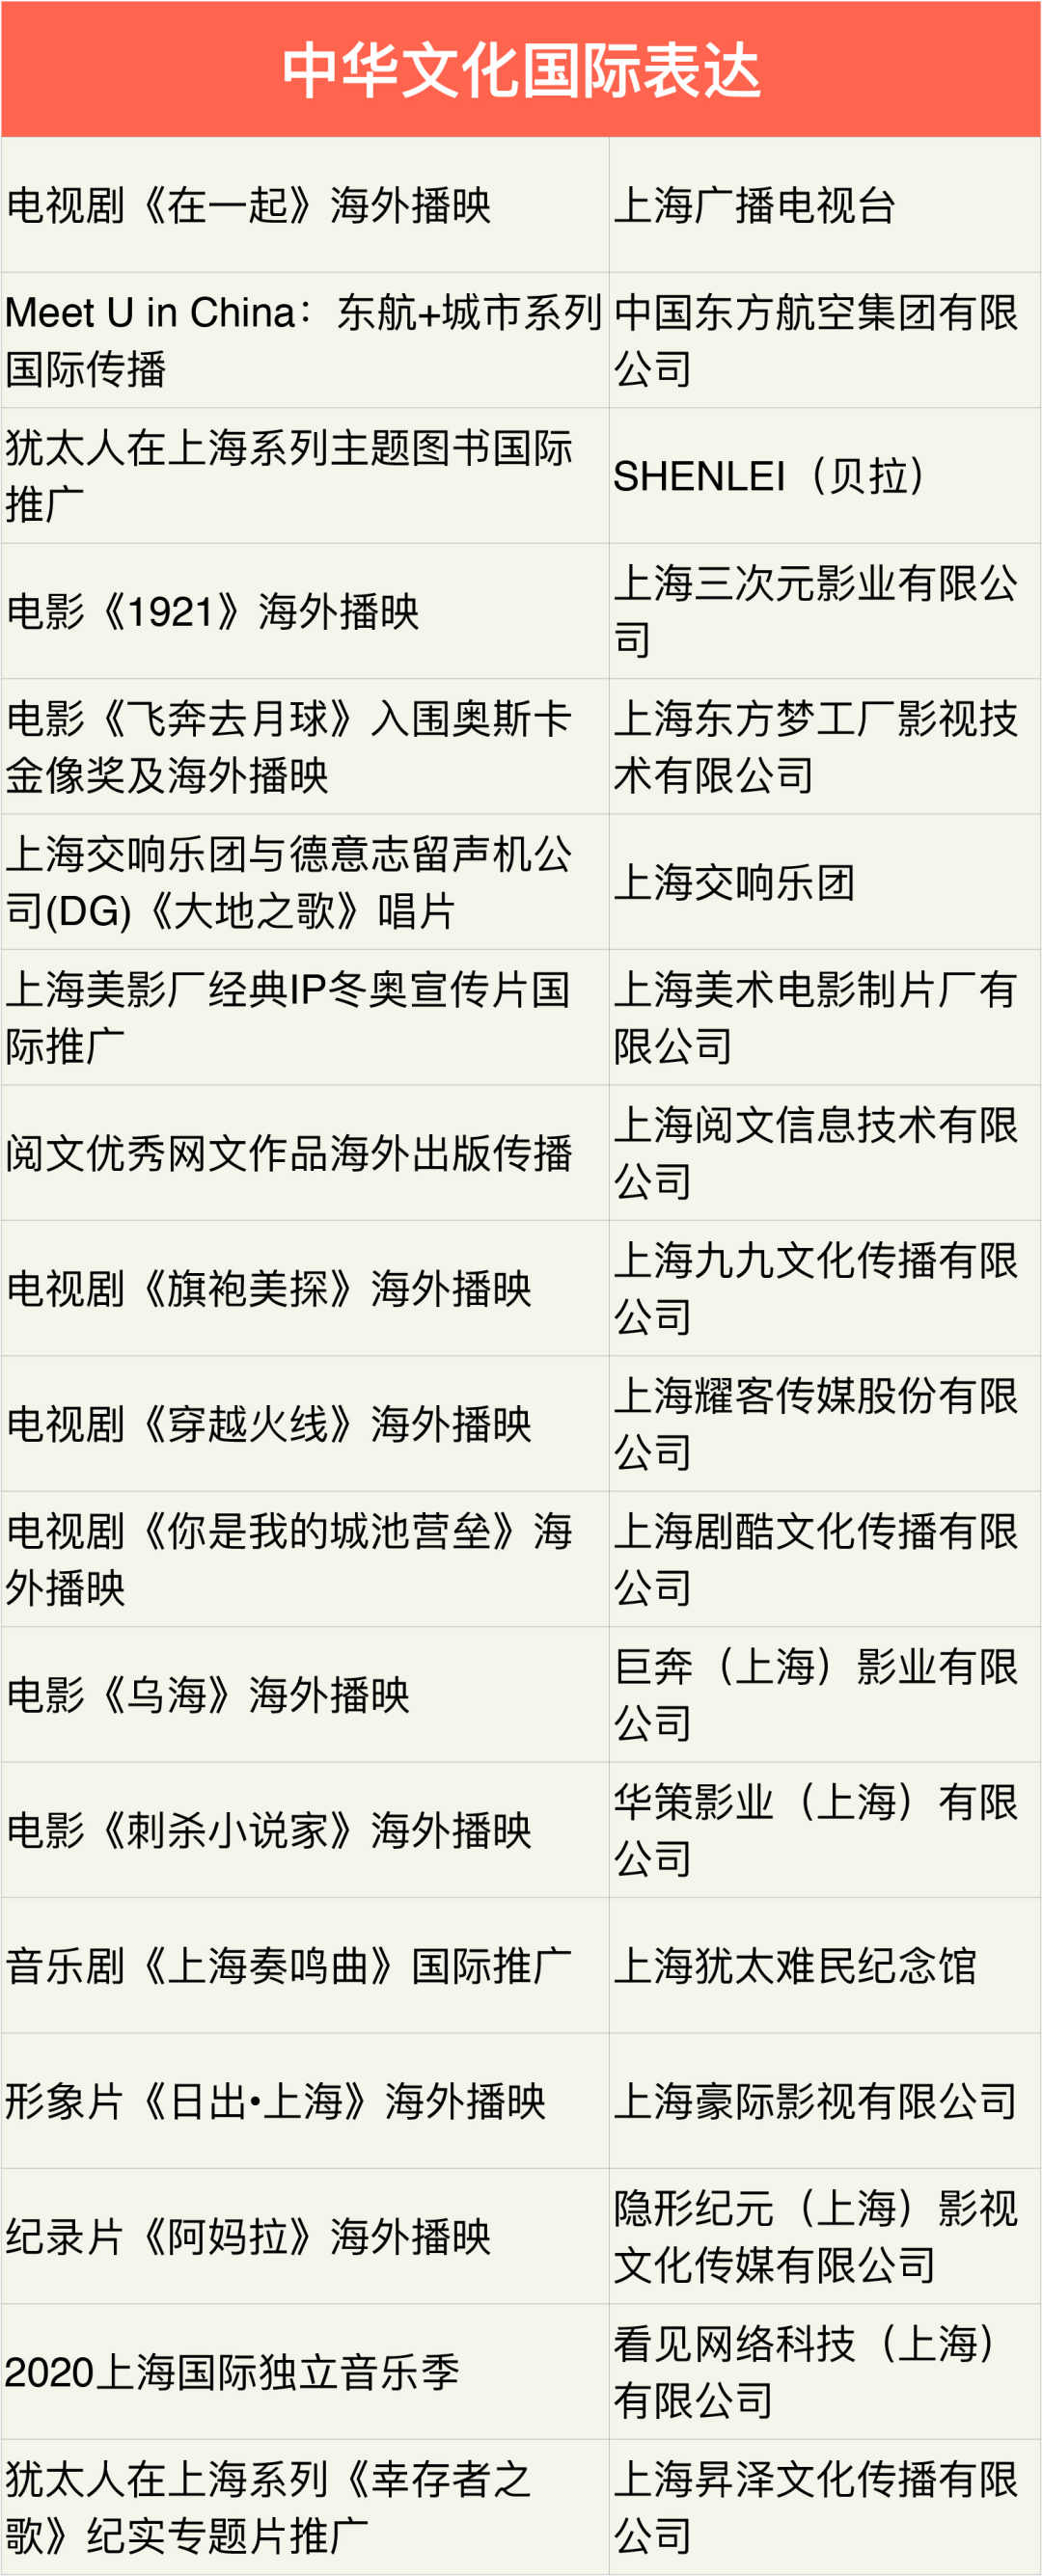 米哈游 等企业获得上海市“中华文化走出去”专项扶持资金插图2